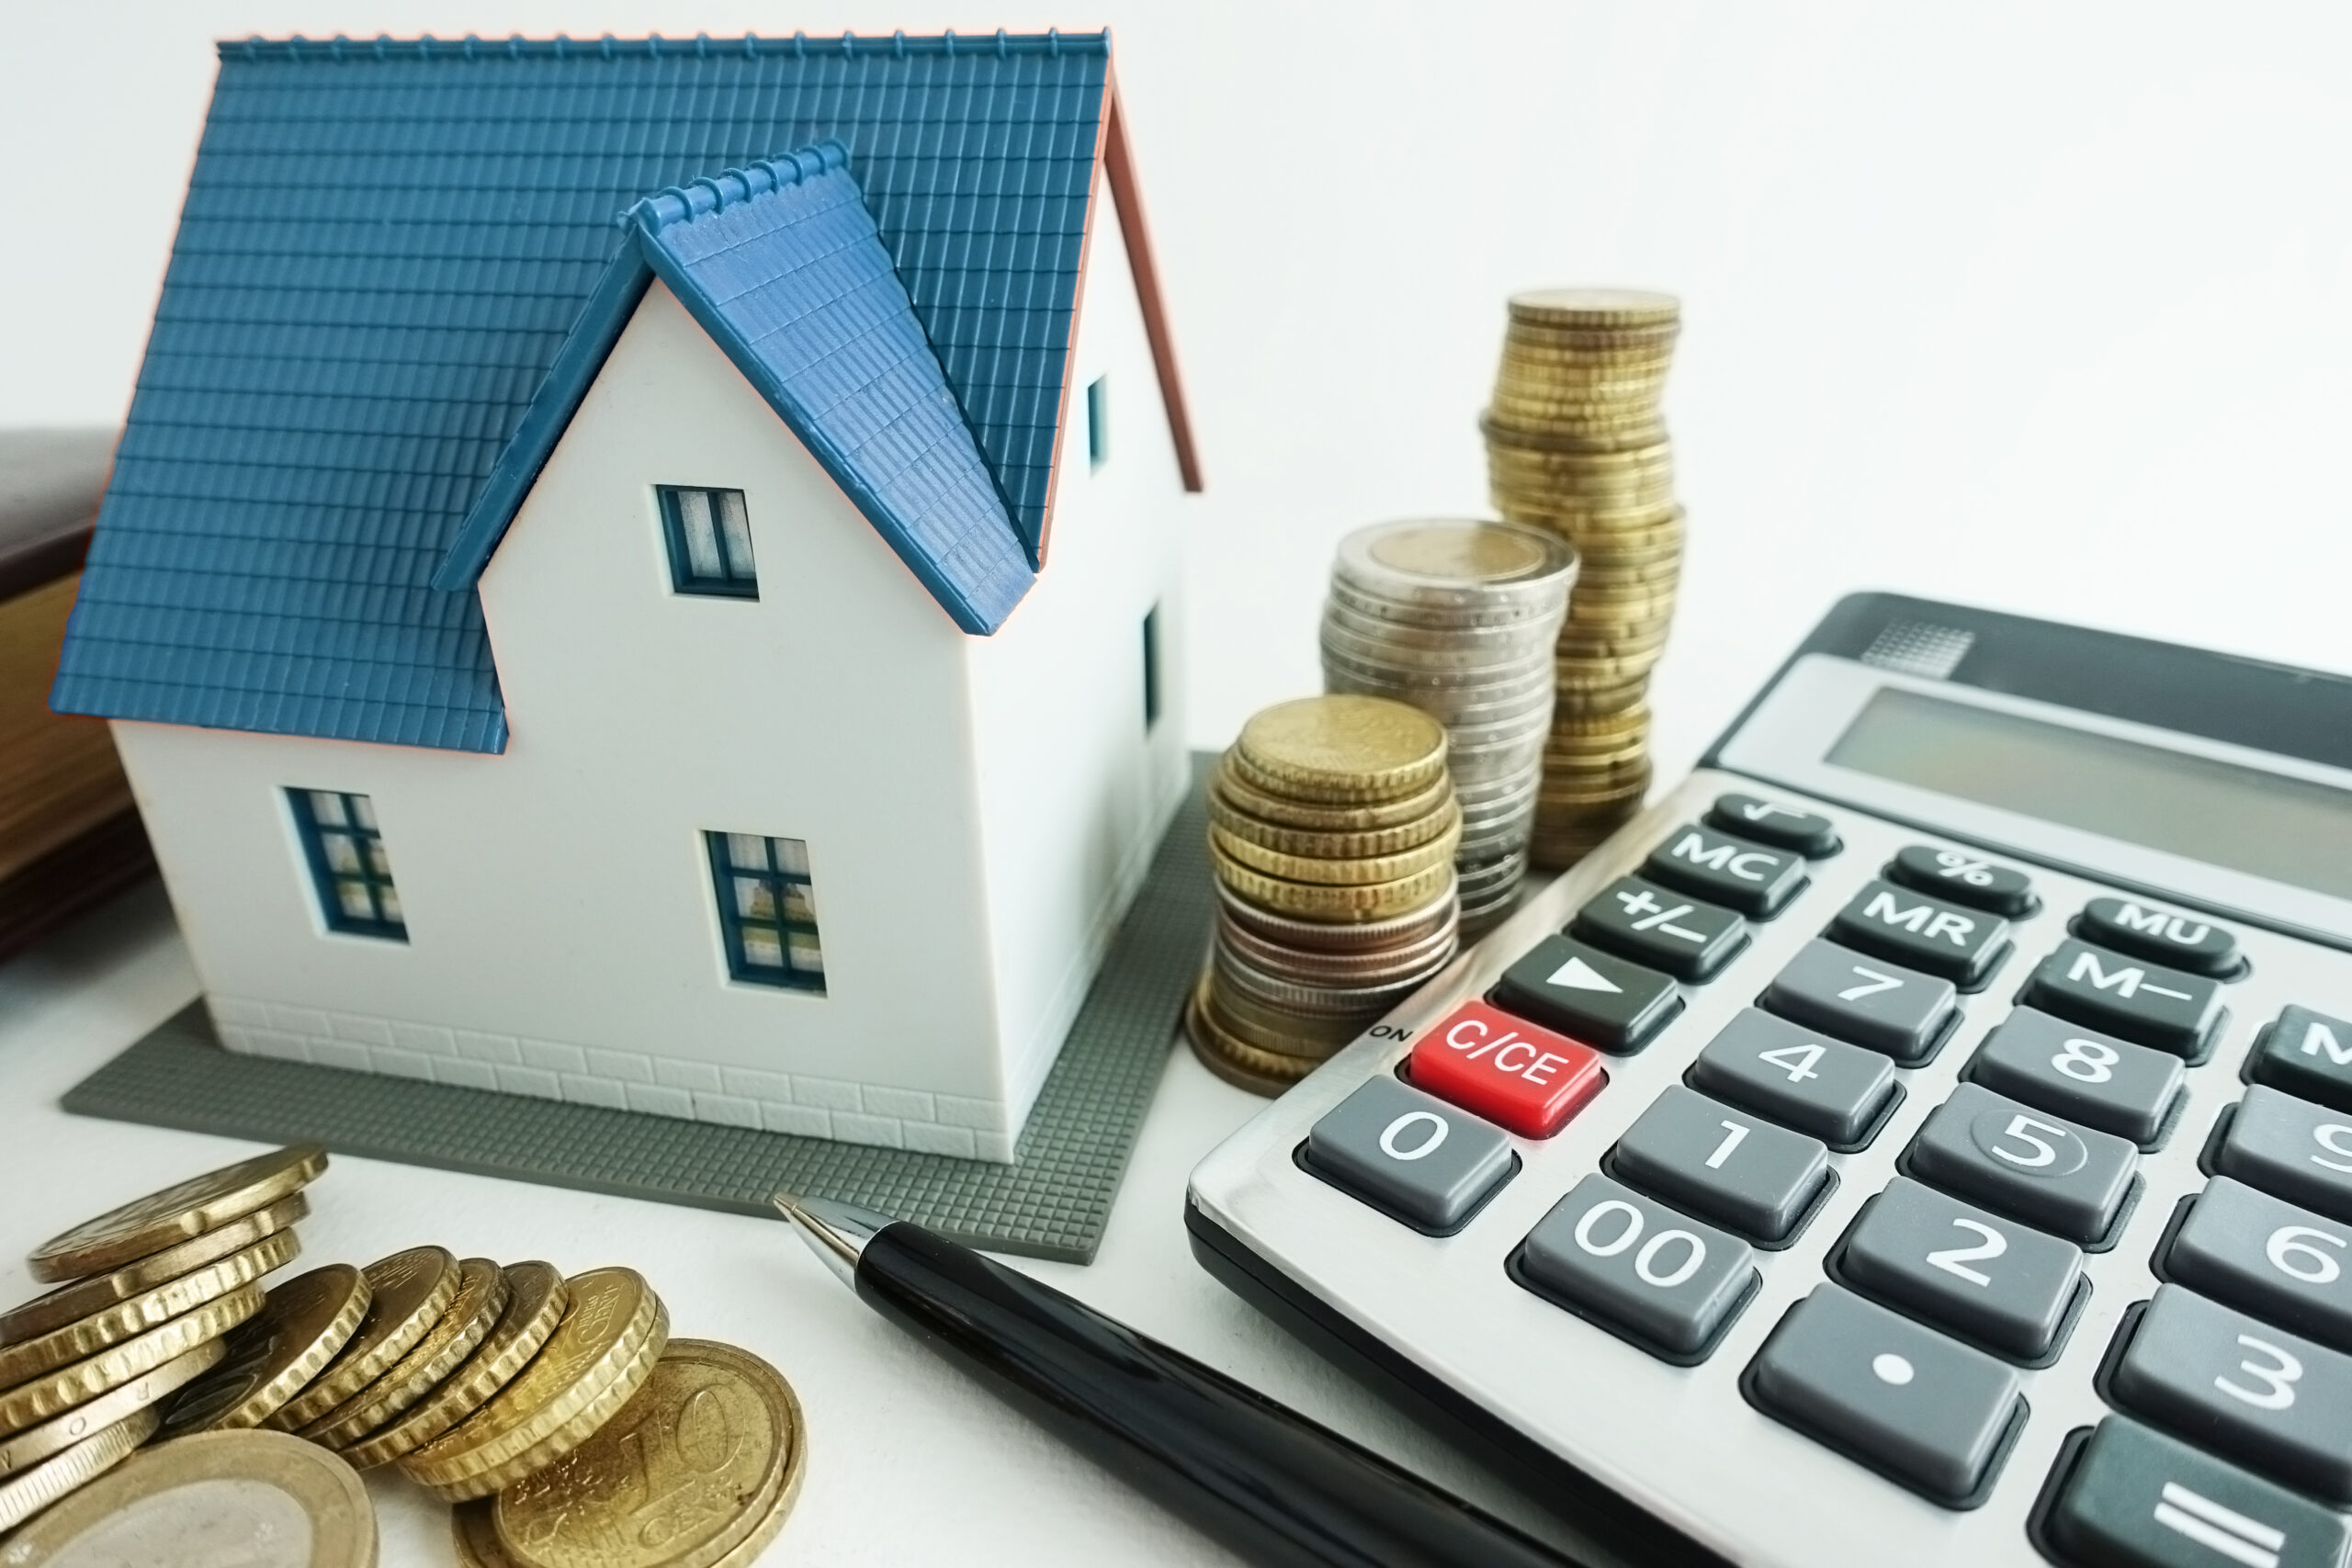 Налоги на подаренное недвижимое имущество квартиры в тайланде цены в рублях